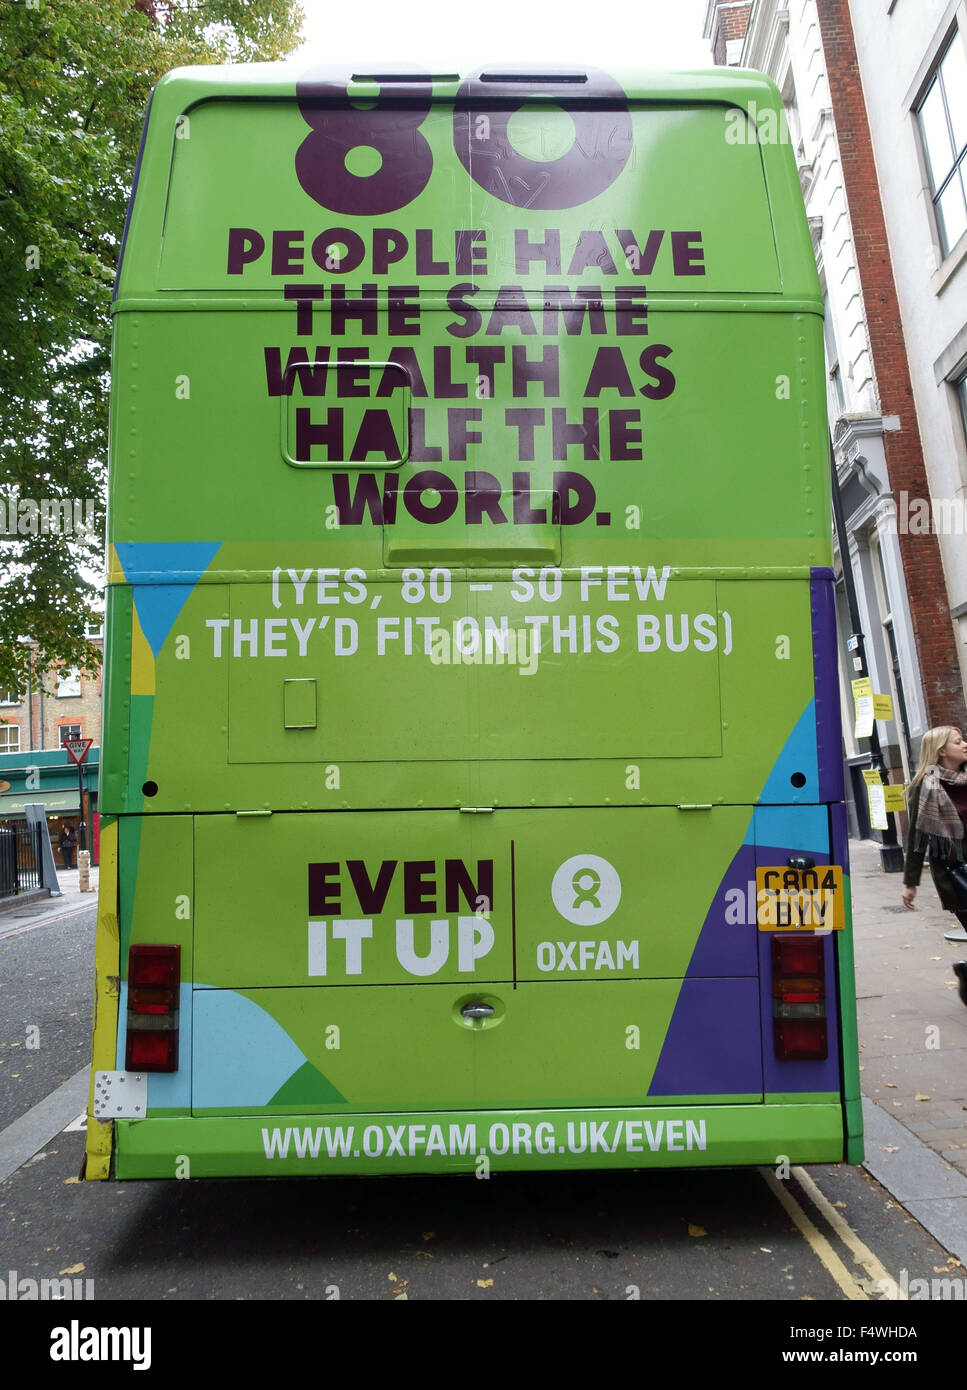 Oxfam „Even IT Up“-Buskampagnen gegen die globale Ungleichheit des Reichtums, London Stockfoto